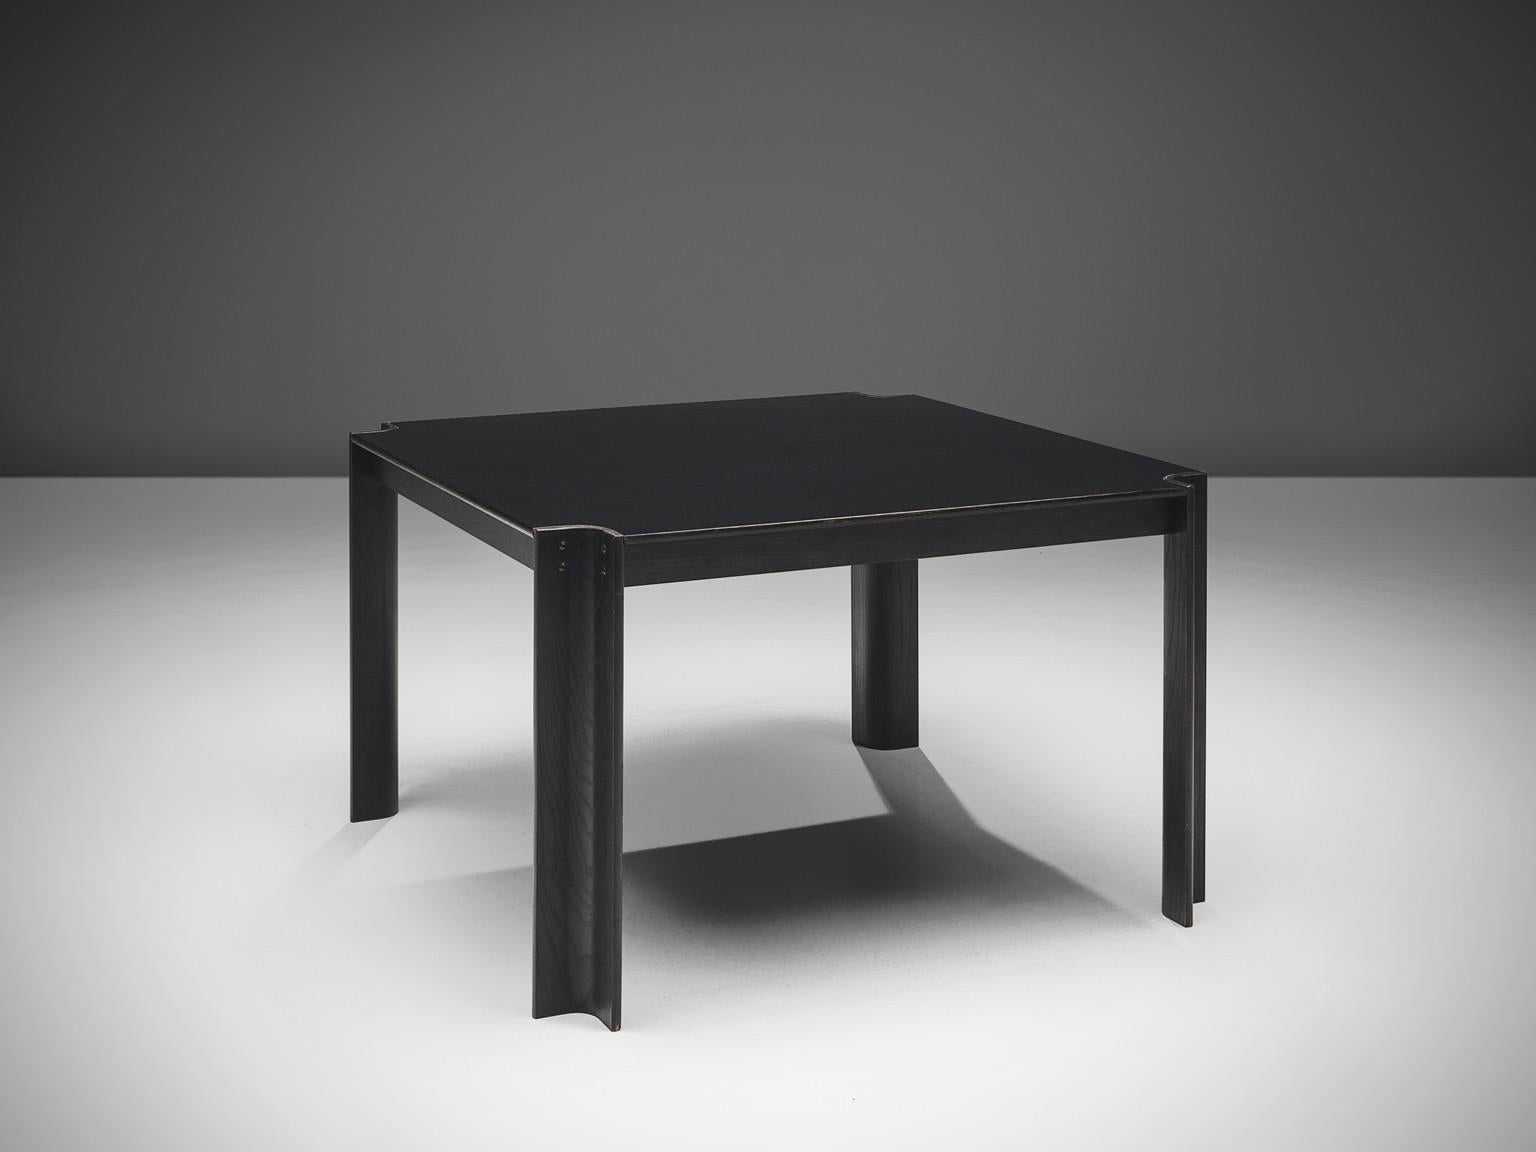 Gijs Bakker pour Castelijn, table de salle à manger 'Strip', frêne laqué noir, Pays-Bas, design 1974.

Cette table a été conçue par le designer néerlandais de meubles et de bijoux Gijs Bakker. La table de salle à manger a été conçue en 1974 et se